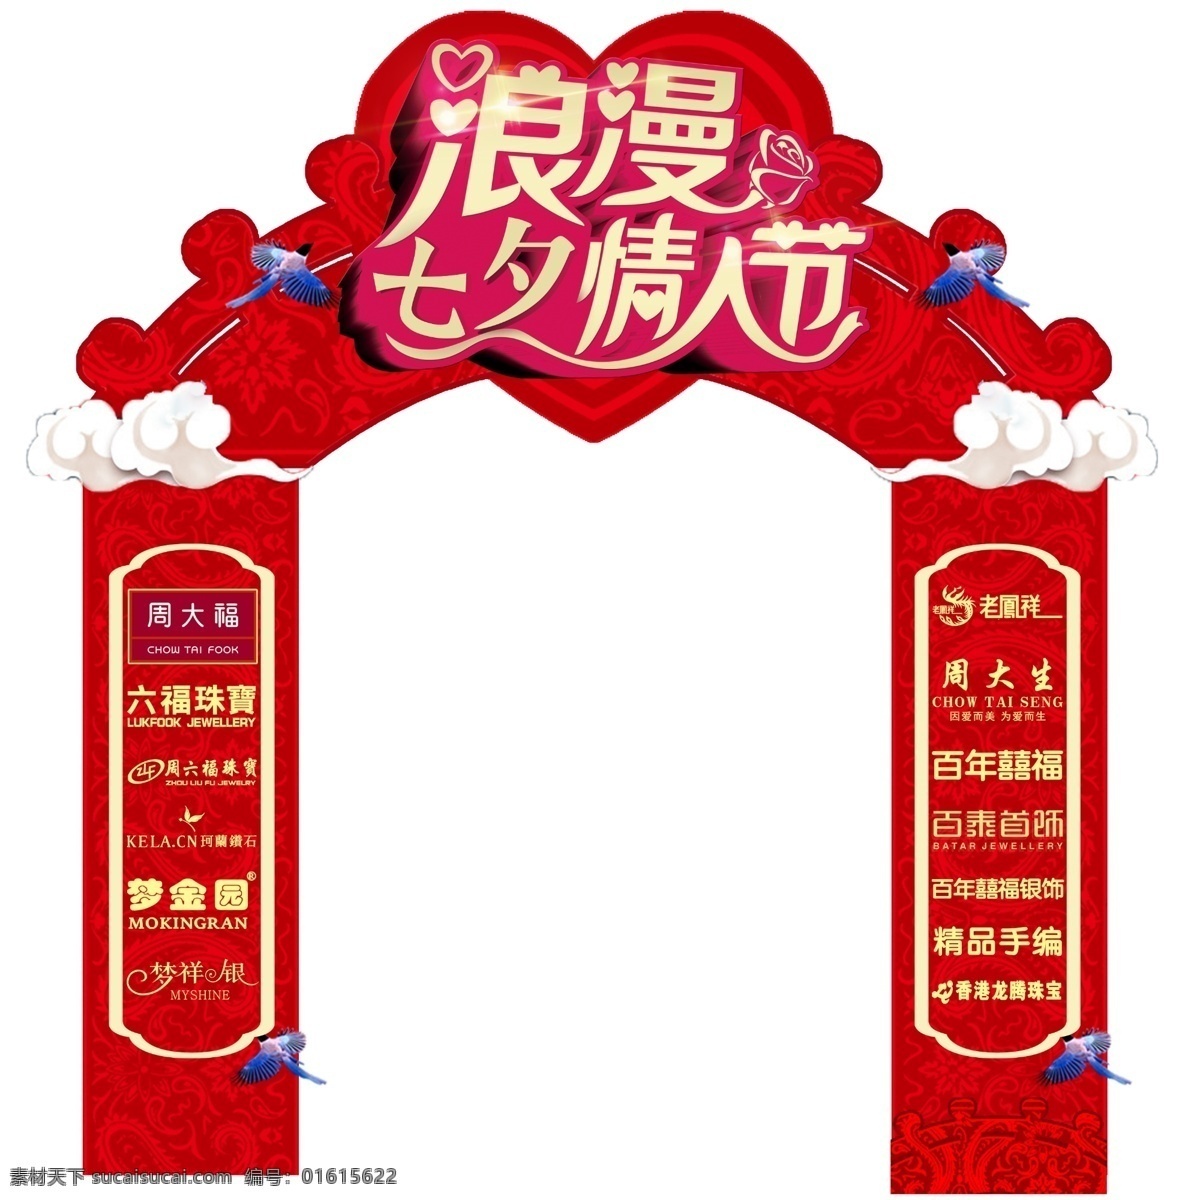 浪漫 七夕 情人节 拱门 浪漫拱门 浪漫情人节 春节拱门 红色拱门 展板模板